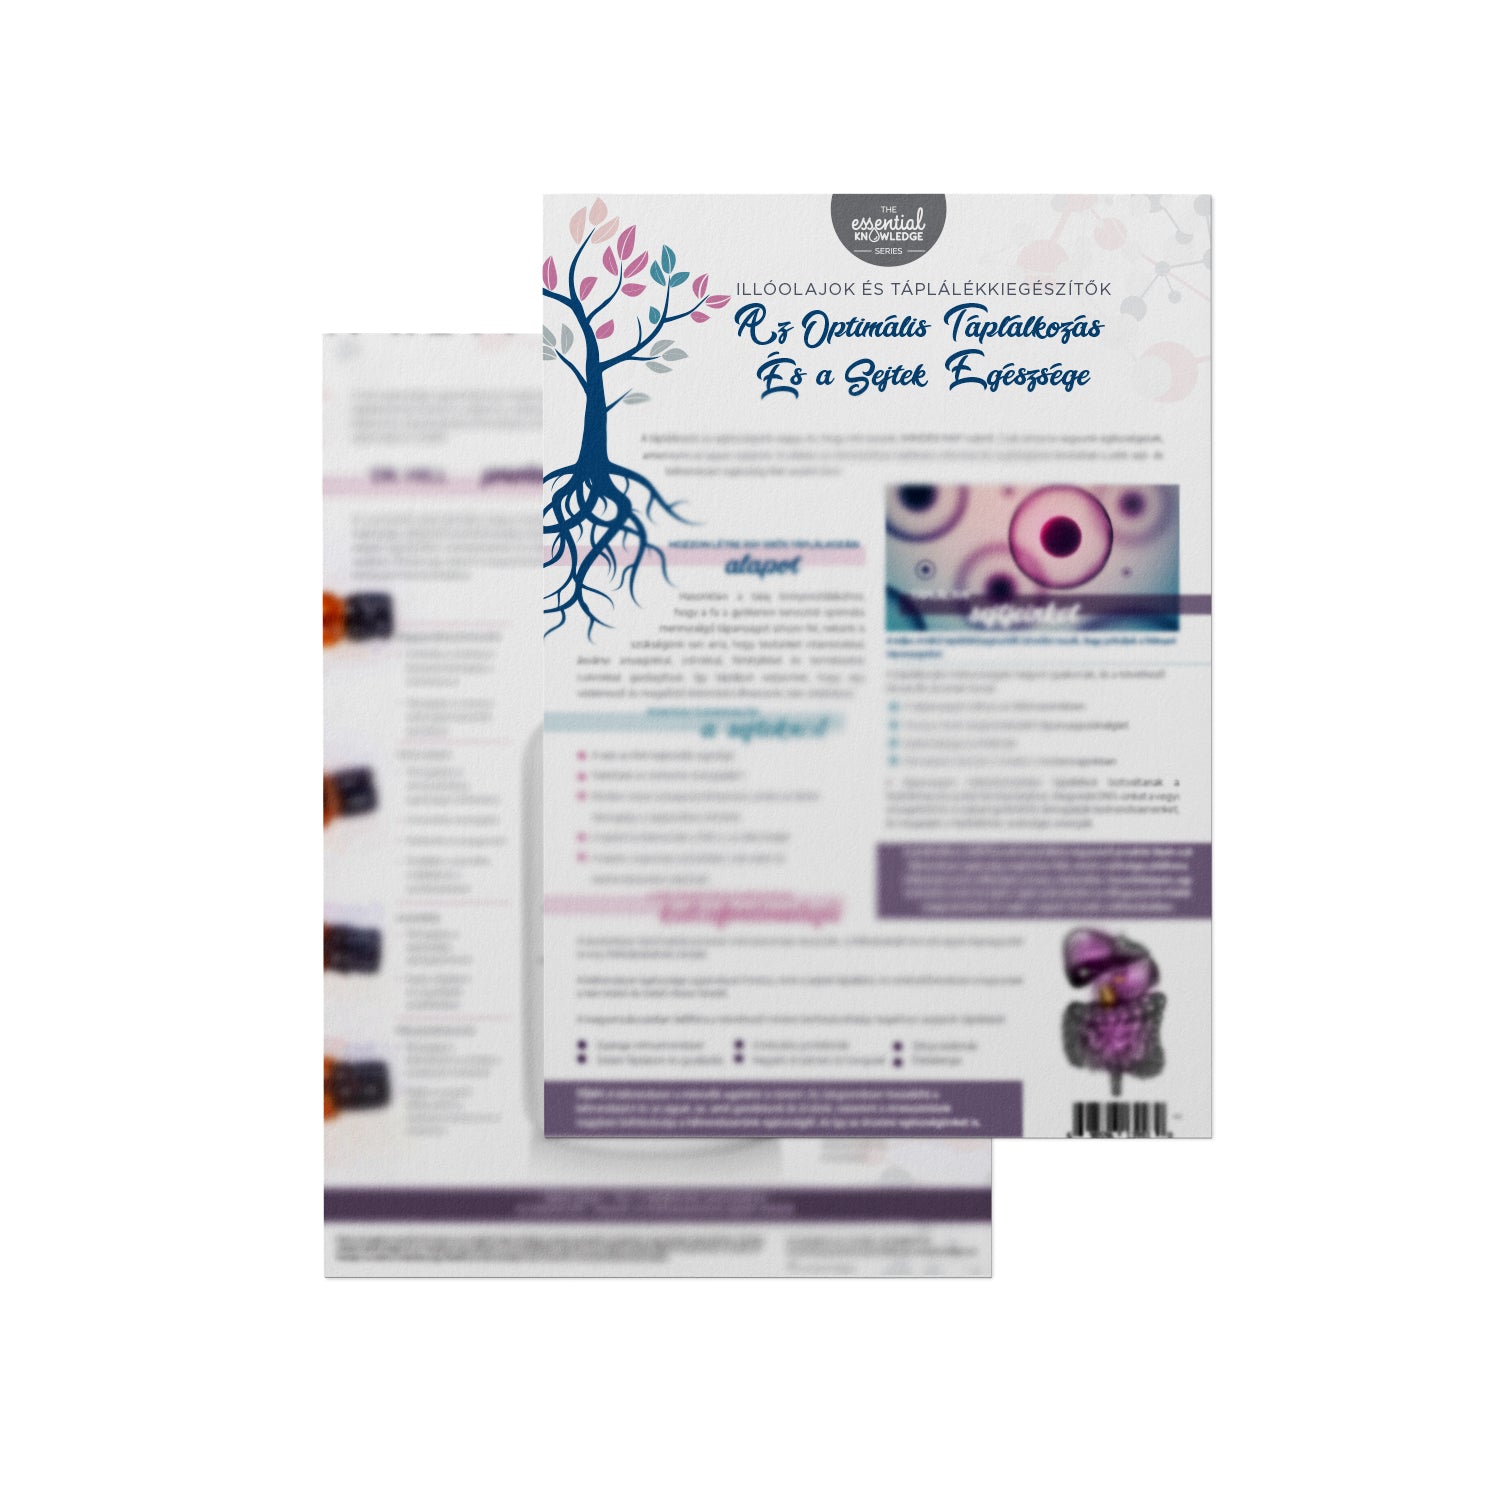 Essential Knowledge sorozat: Az optimális táplálkozás és a sejtek egészsége - Tépőtömb (25 lapos)- MAGYAR NYELVŰ